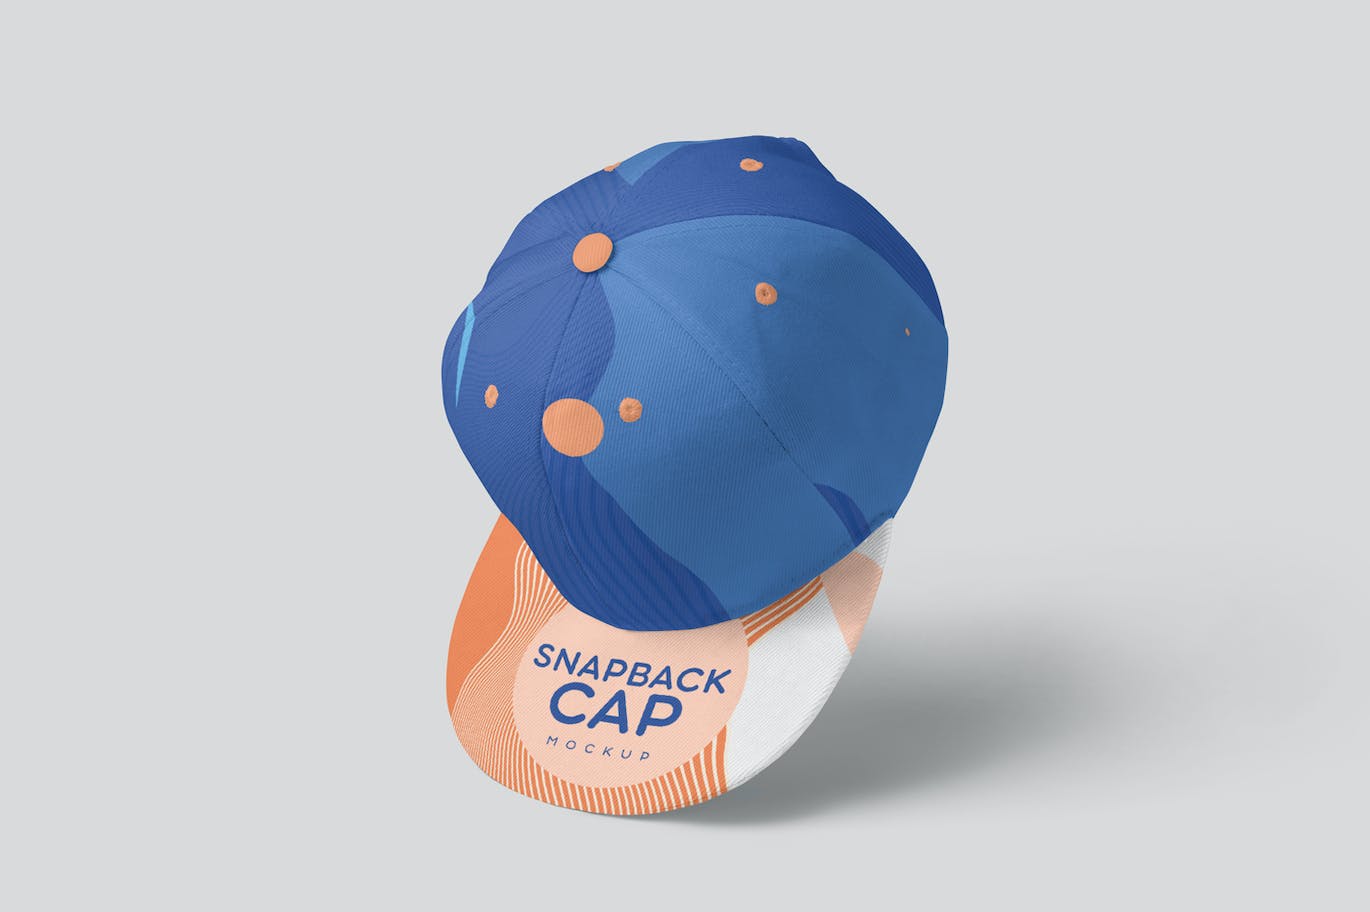 棒球帽运动品牌设计样机 Snapback Cap Mockups 样机素材 第5张